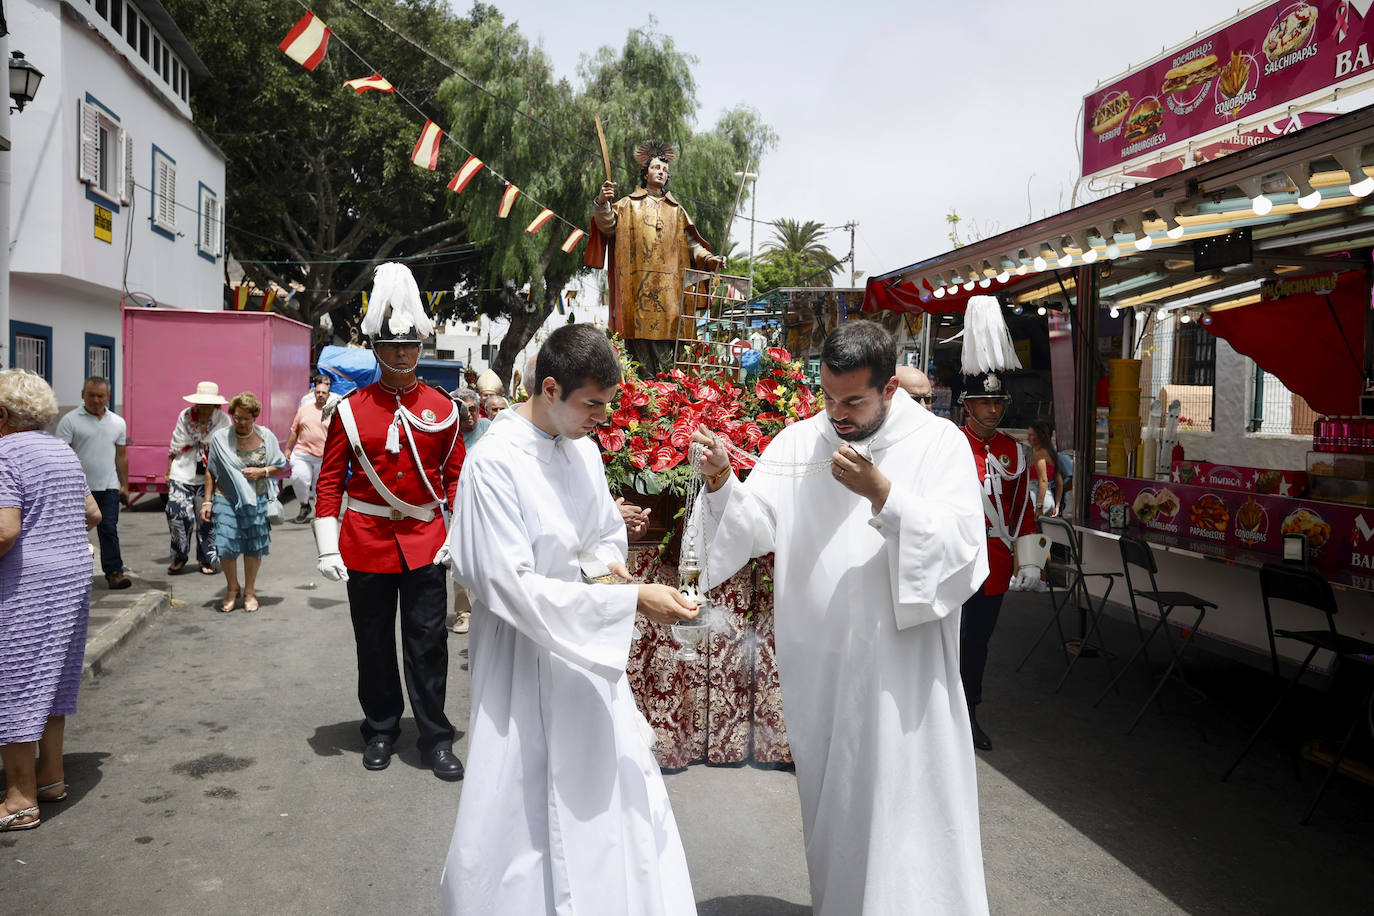 Imagen de San Lorenzo durante la procesión.